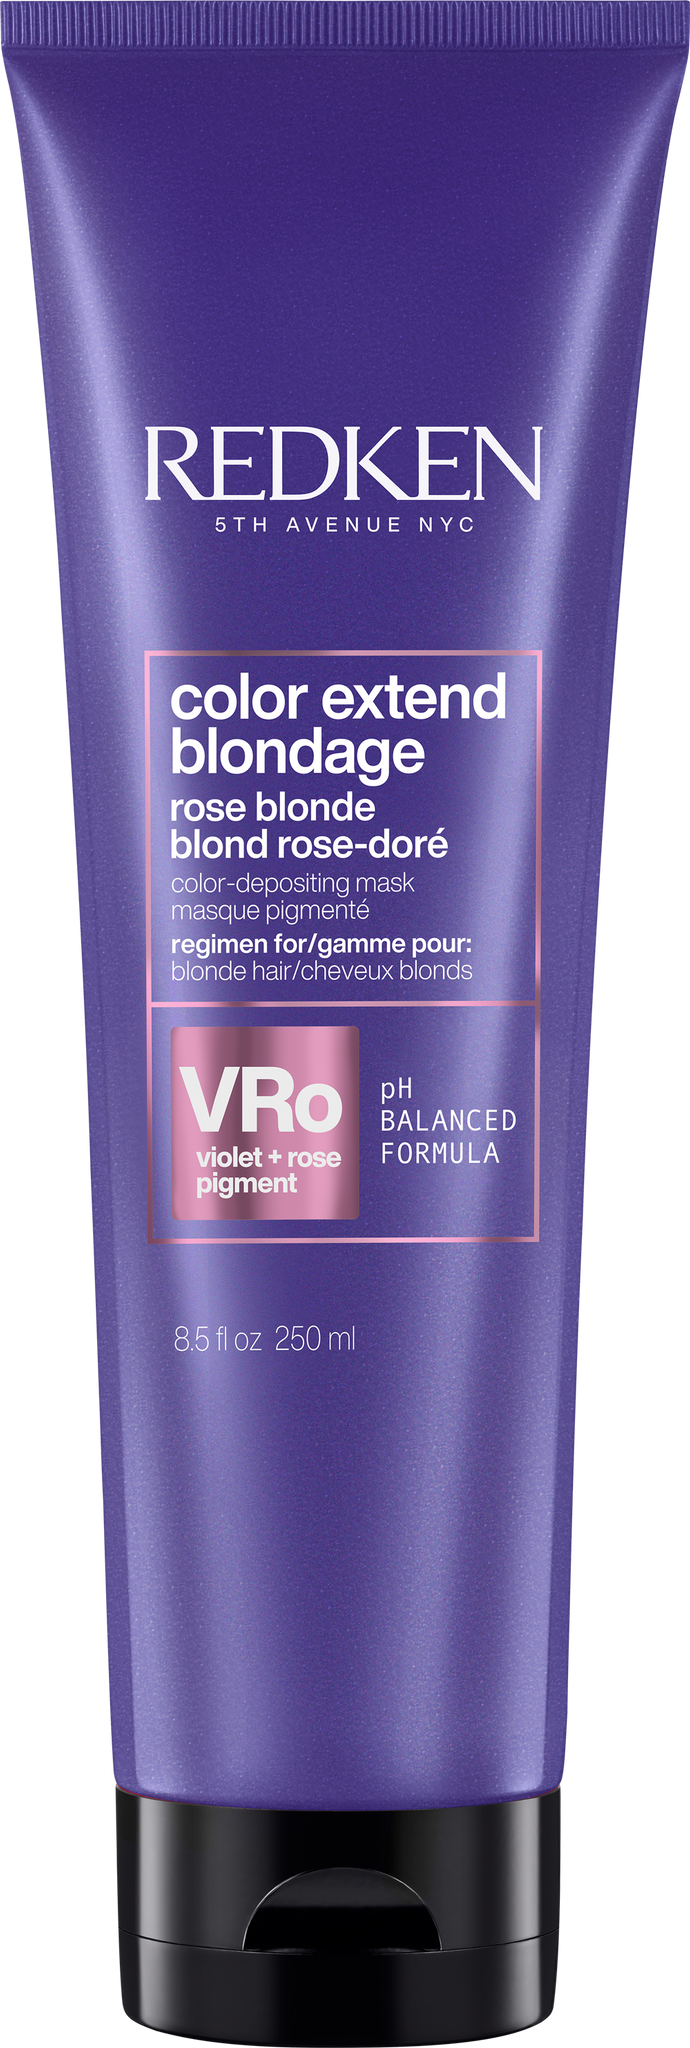 Color Extend Blondage masque pigmenté 250ml